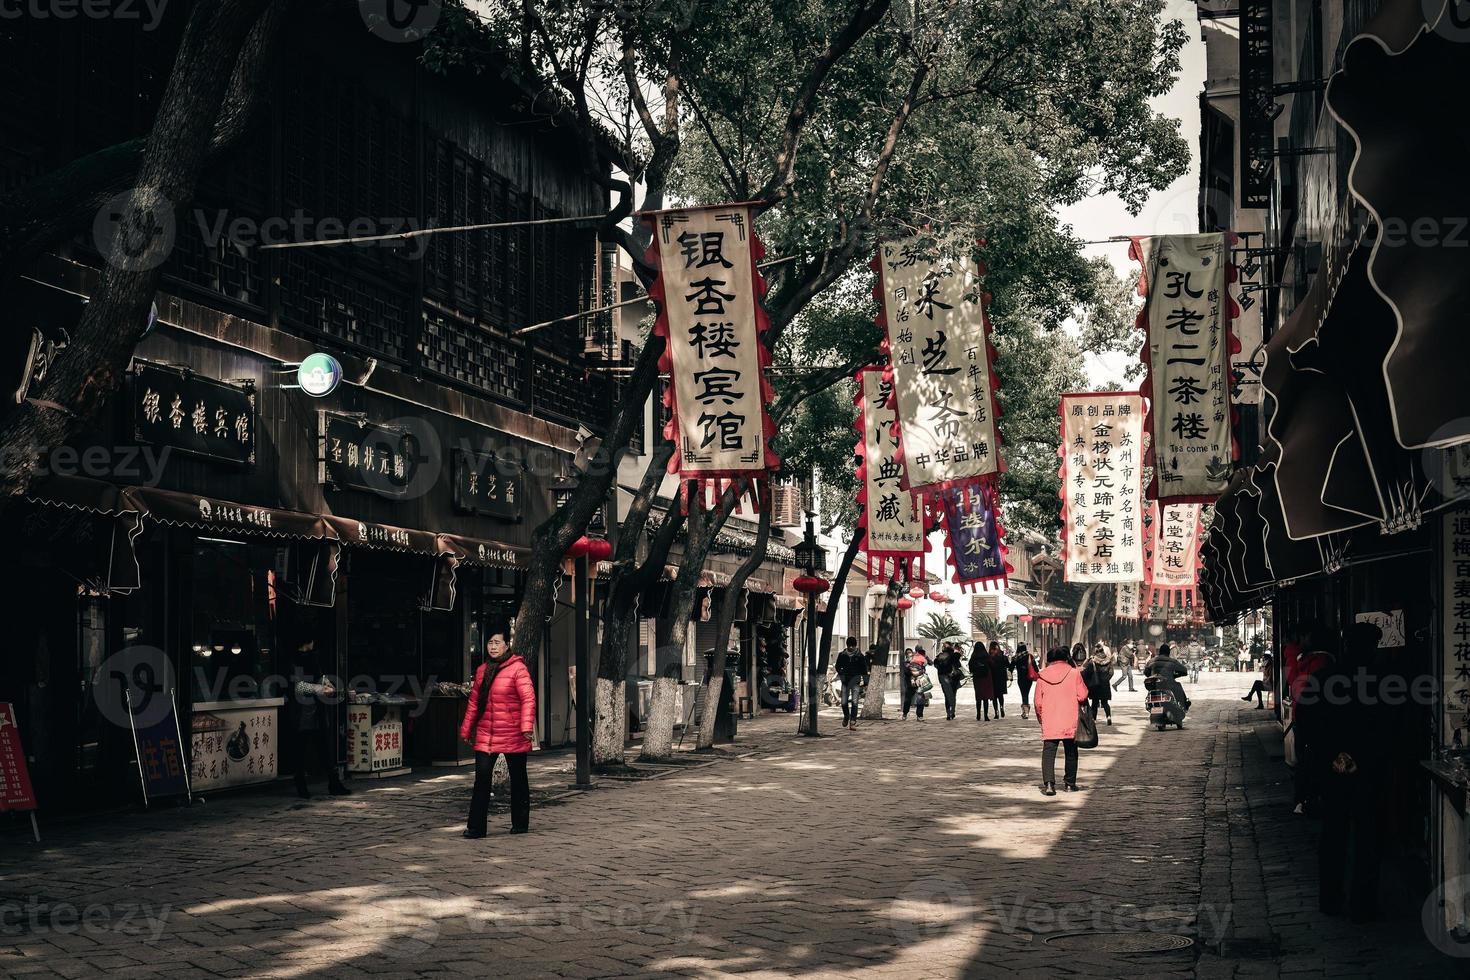 Market street in Wujiang, Suzhou, China photo